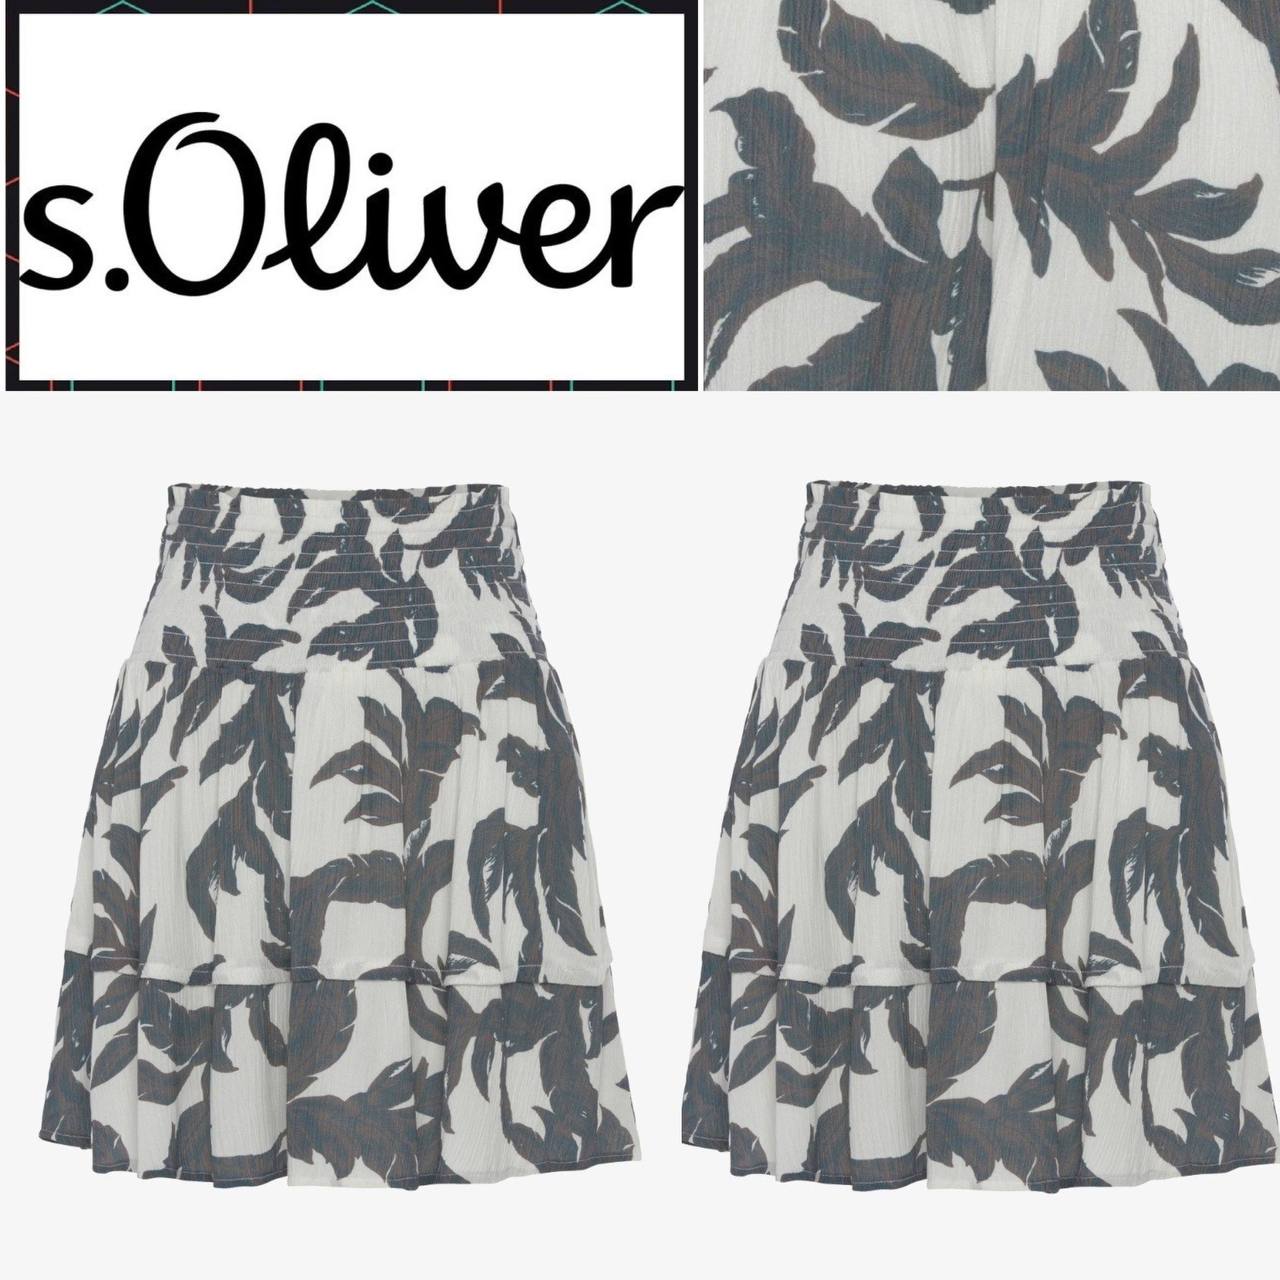 Летняя юбка от S.Oliver